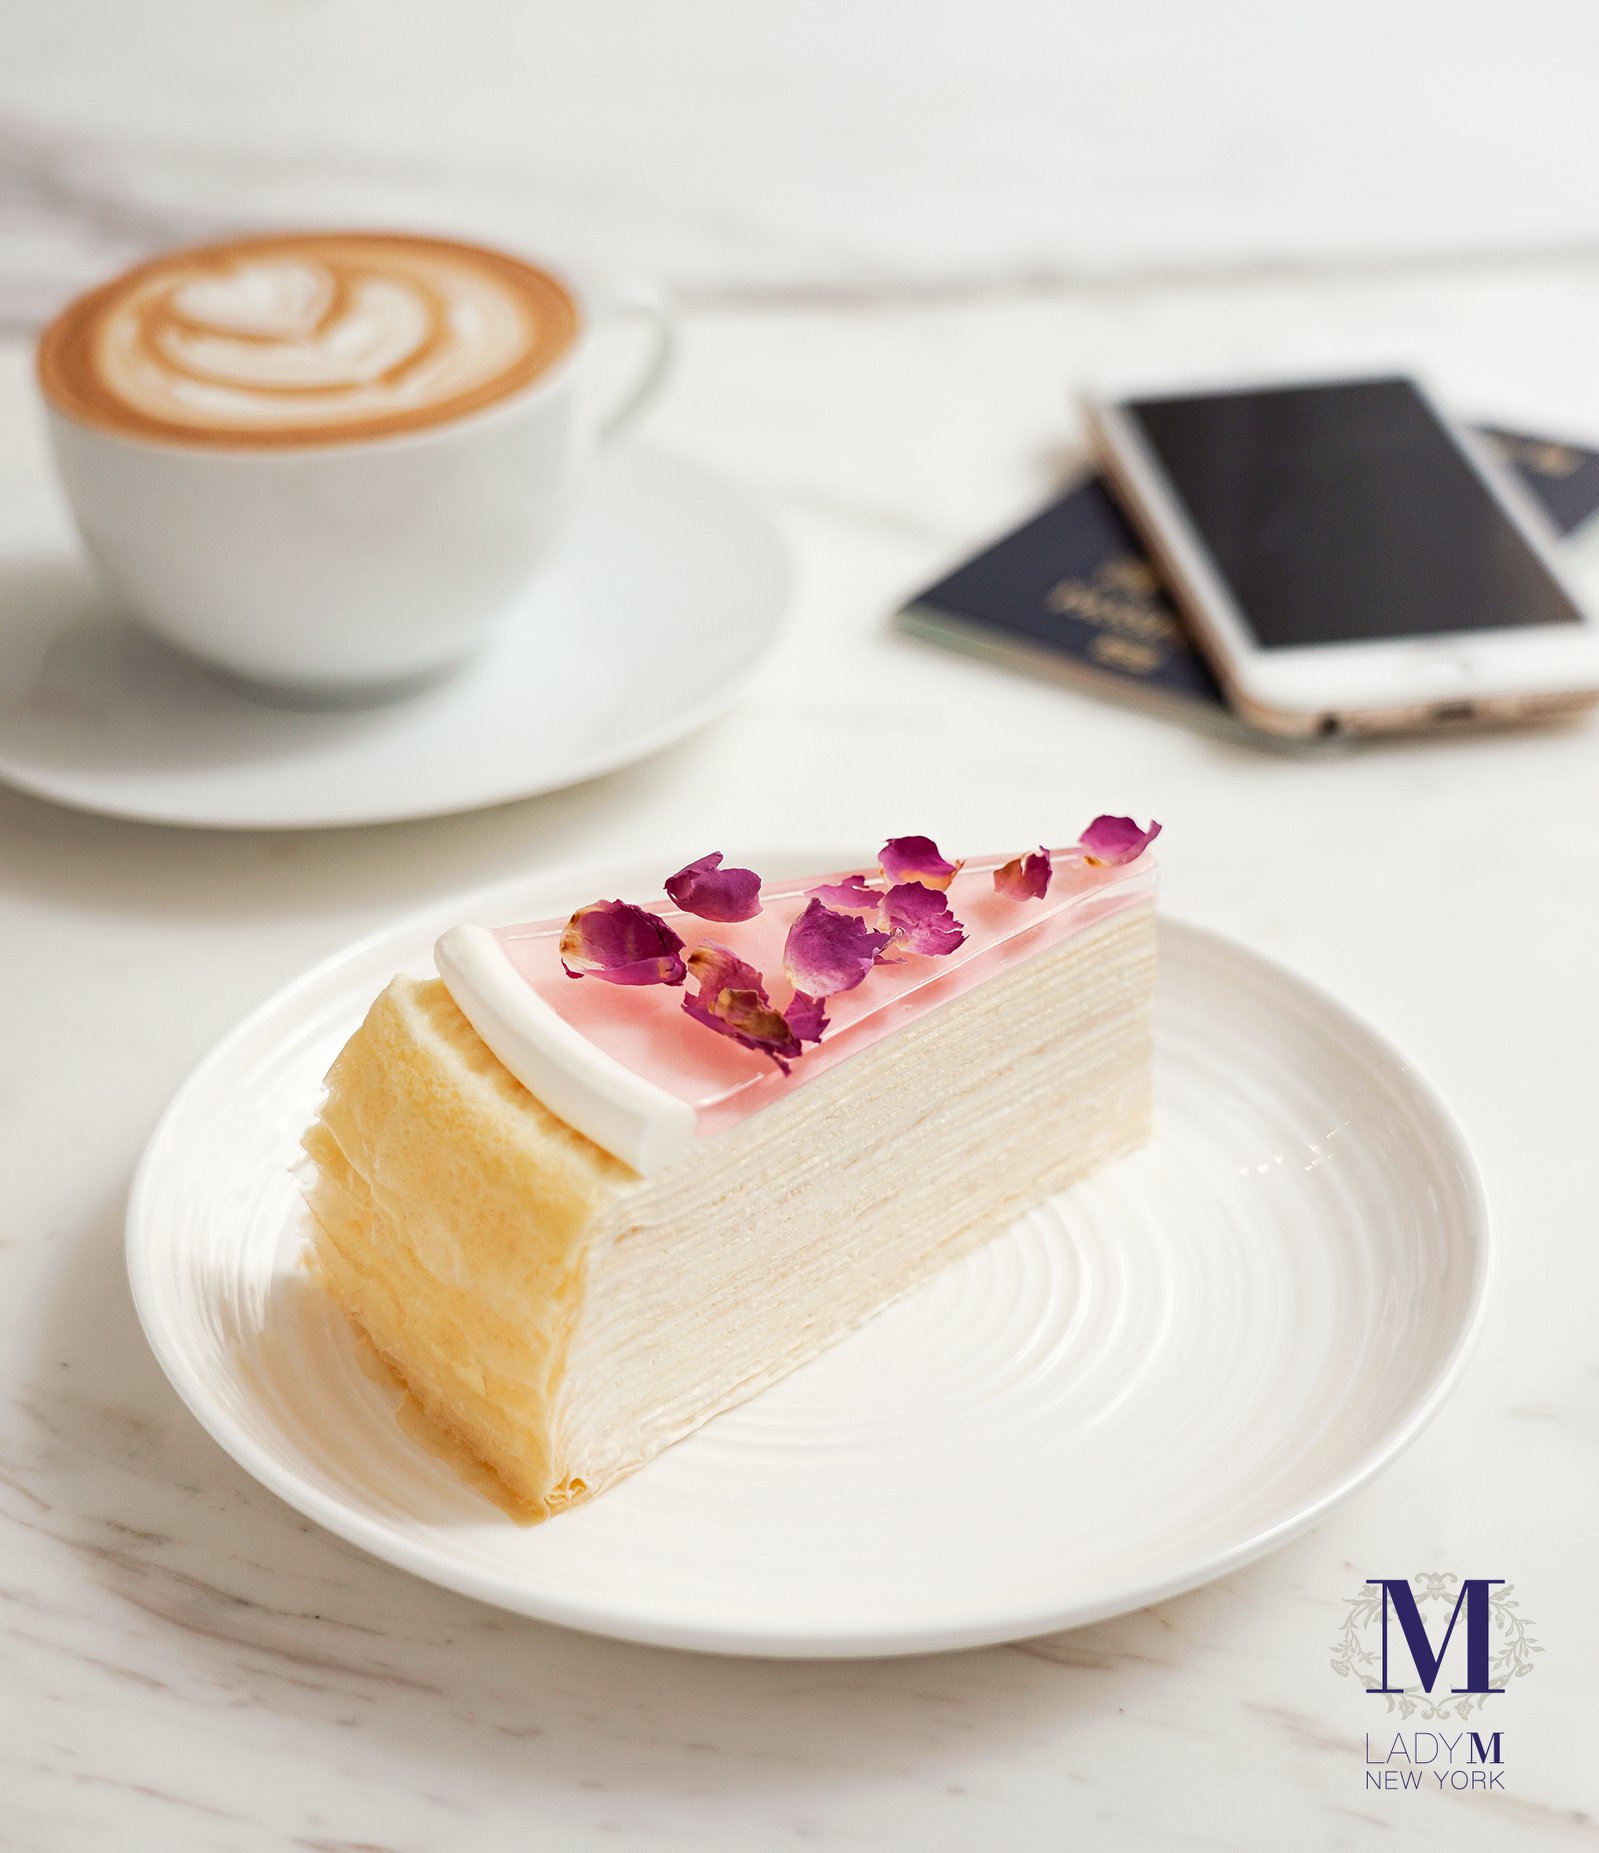 長周末及復活節假期準備出外旅遊？登機前來 Lady M 香港國際機場店享用精緻的蛋糕套餐，挑選你喜愛的千層蛋糕，配以拉花咖啡或鮮奶茶， 以甜蜜氣氛展開你的悠閒假期吧！